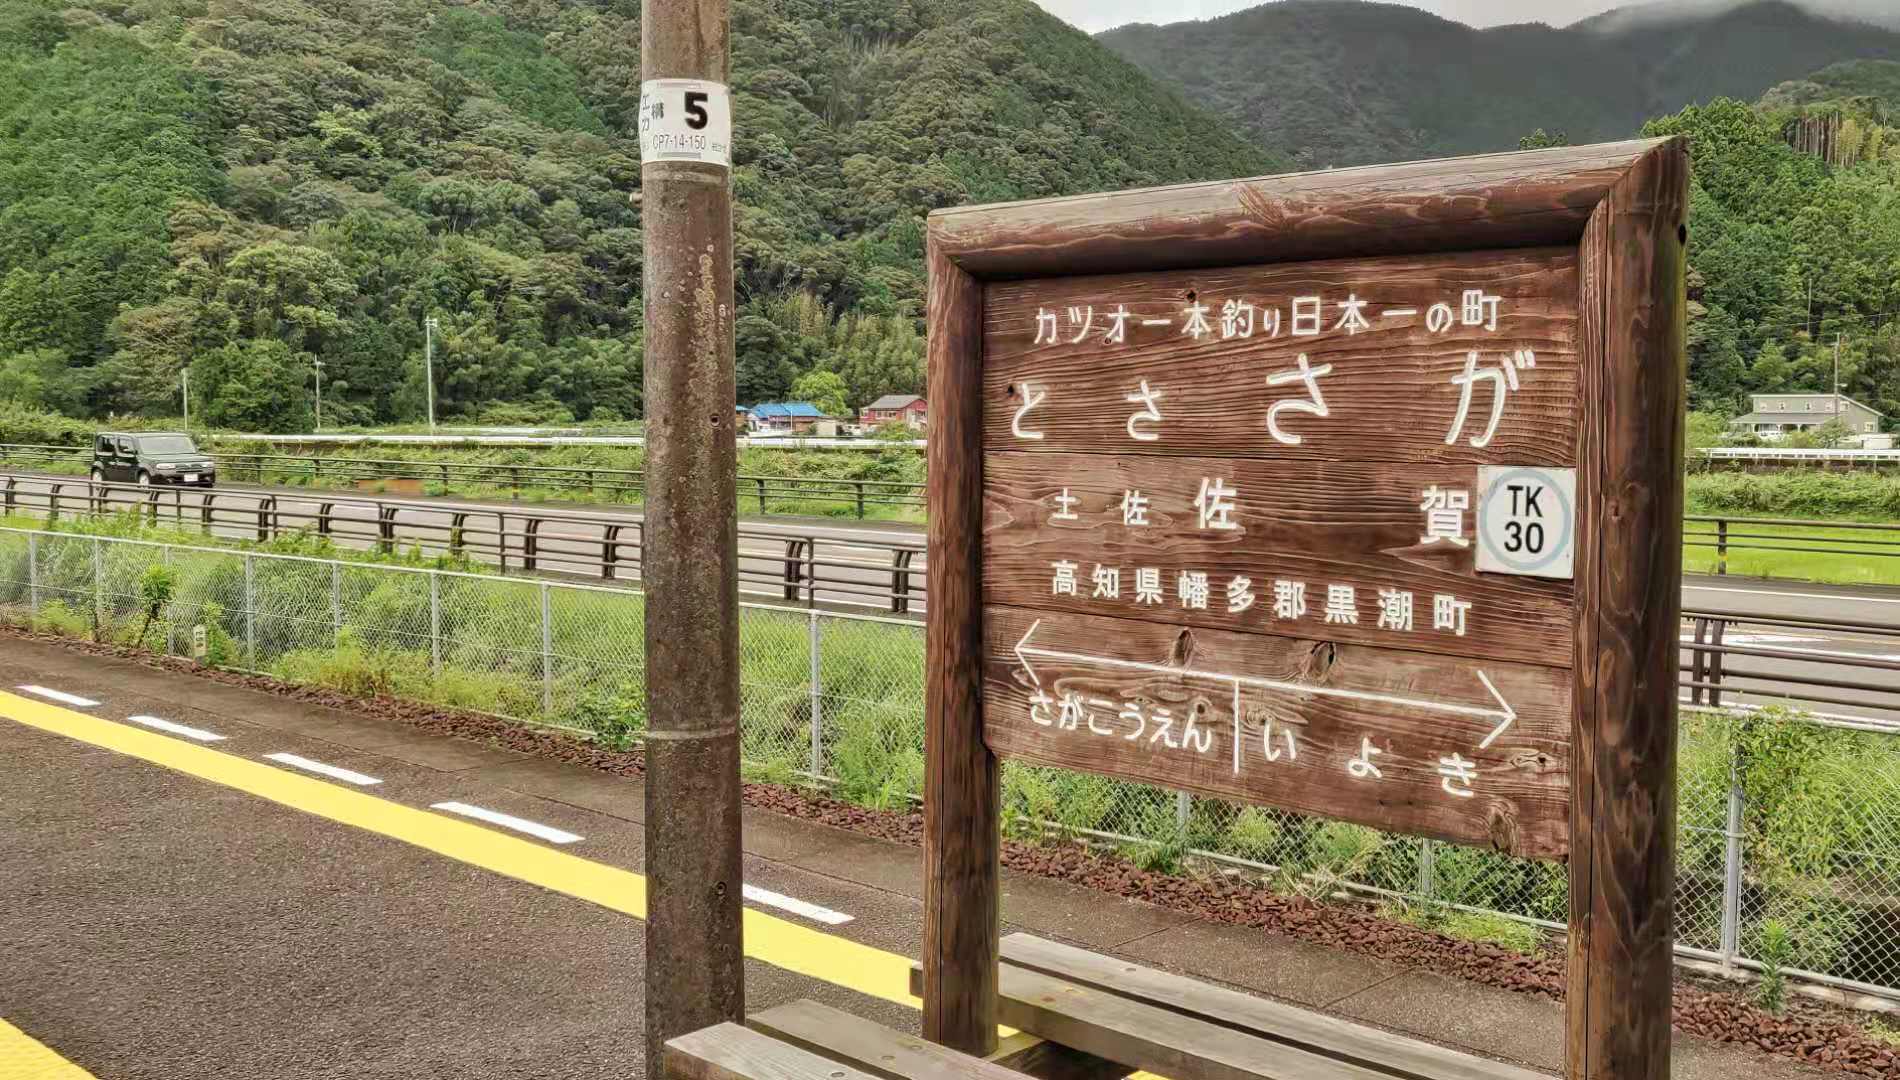 火车进入四国岛的小车站